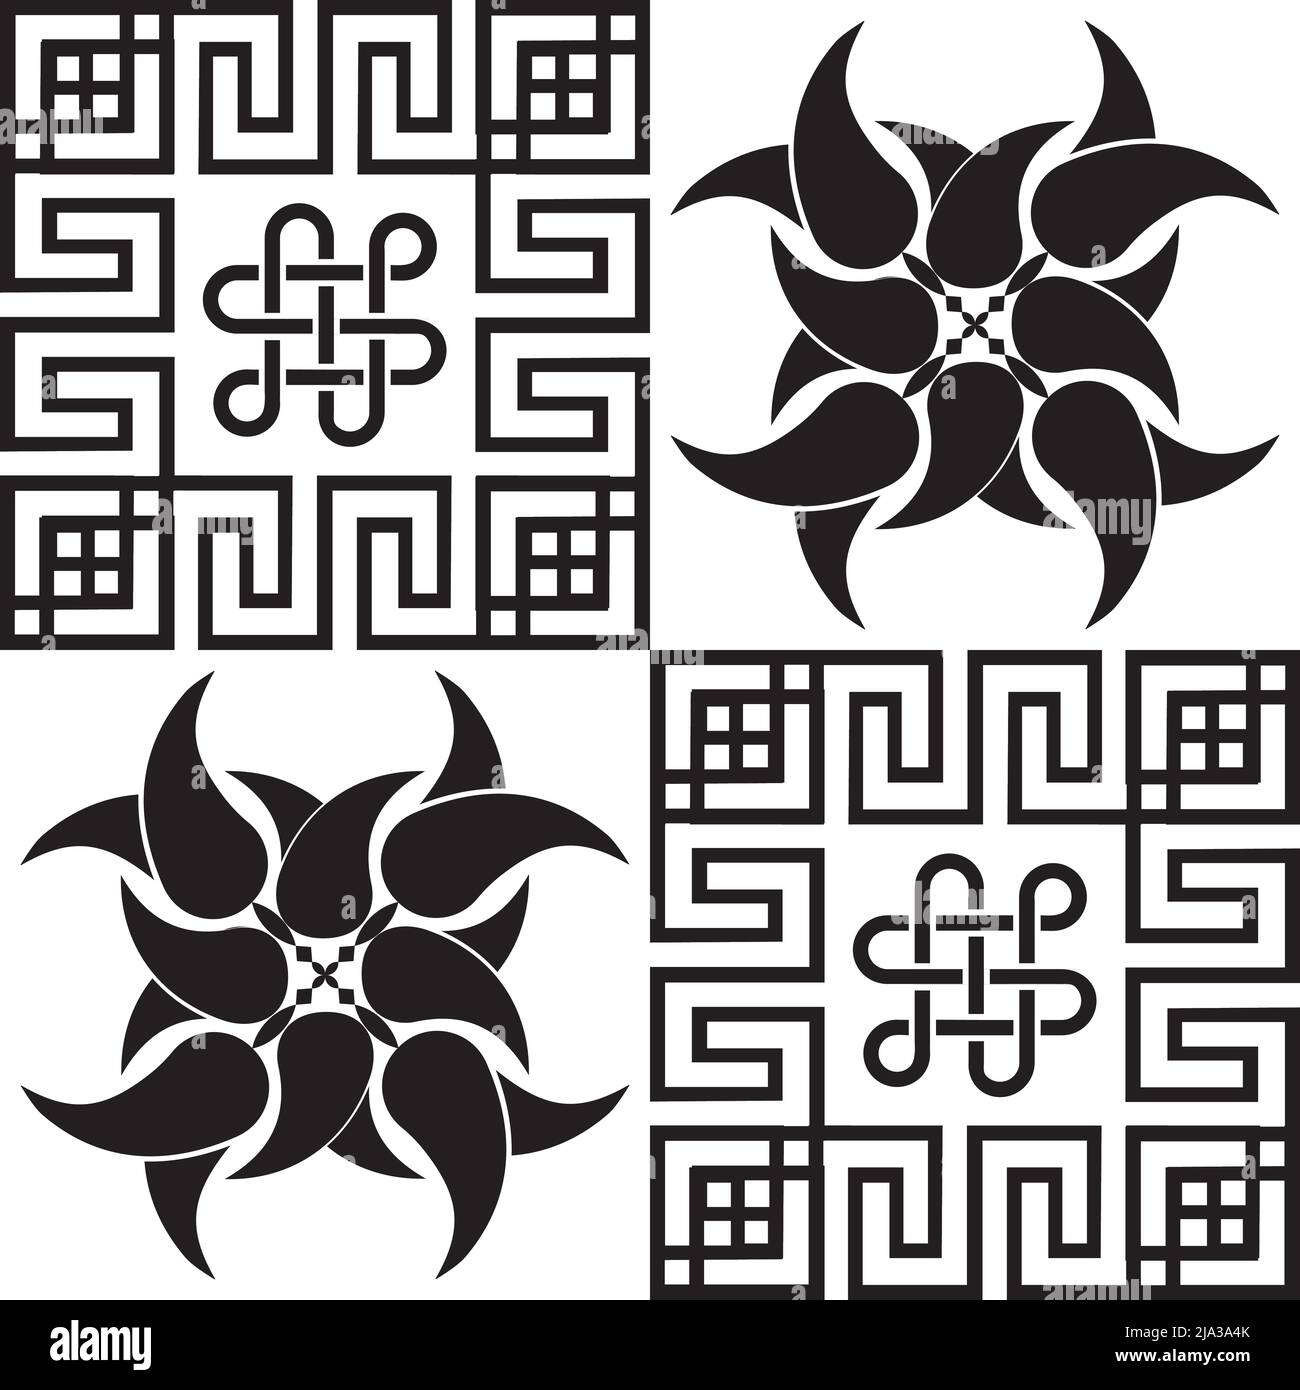 Vektor-Illustration von schwarzen abstrakten folklorischen nahtlose Muster auf weißem Hintergrund. Vektorgrafik Stock Vektor